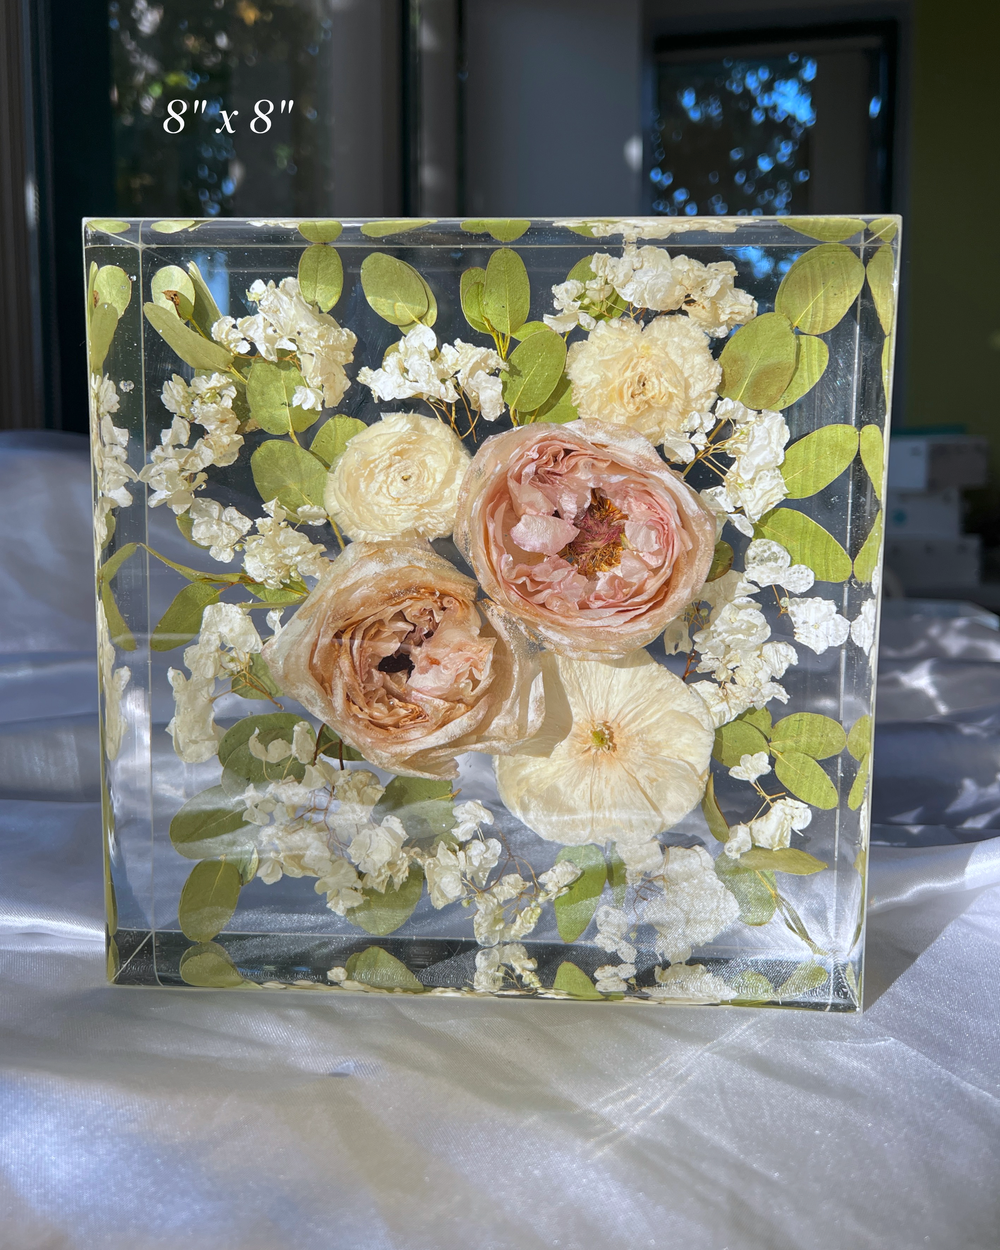 Flower preservation , resin gifts & workshops (@aart_cafe